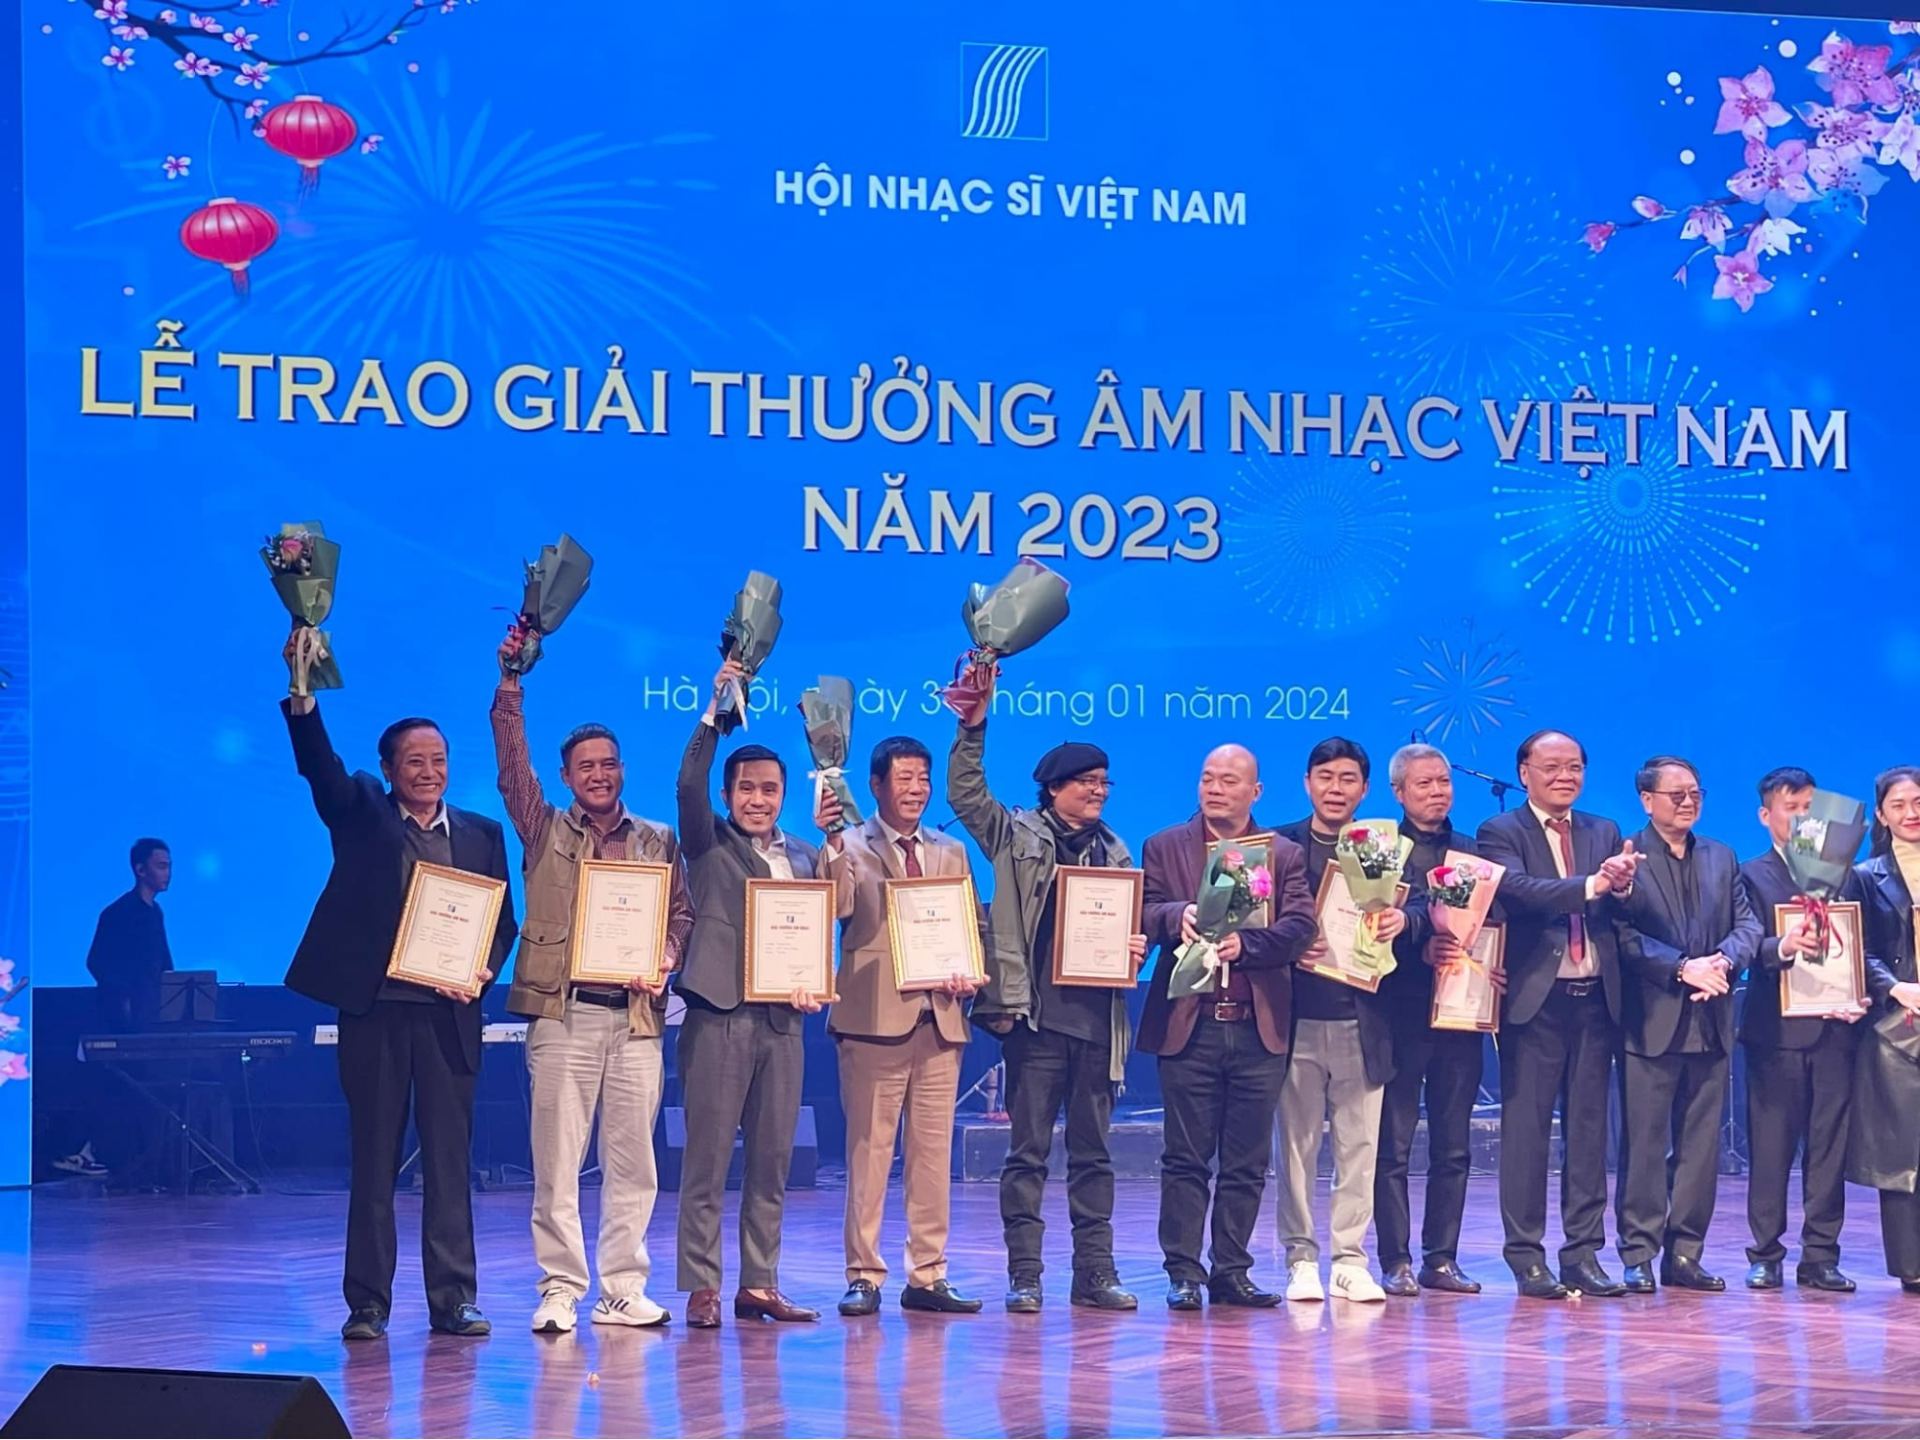 Nhà thơ Nguyễn Đăng Độ và Nhạc sỹ Phan Huy Hà cùng các tác giả xuất sắc tại Lễ trao giải thưởng âm nhạc Việt Nam năm 2023